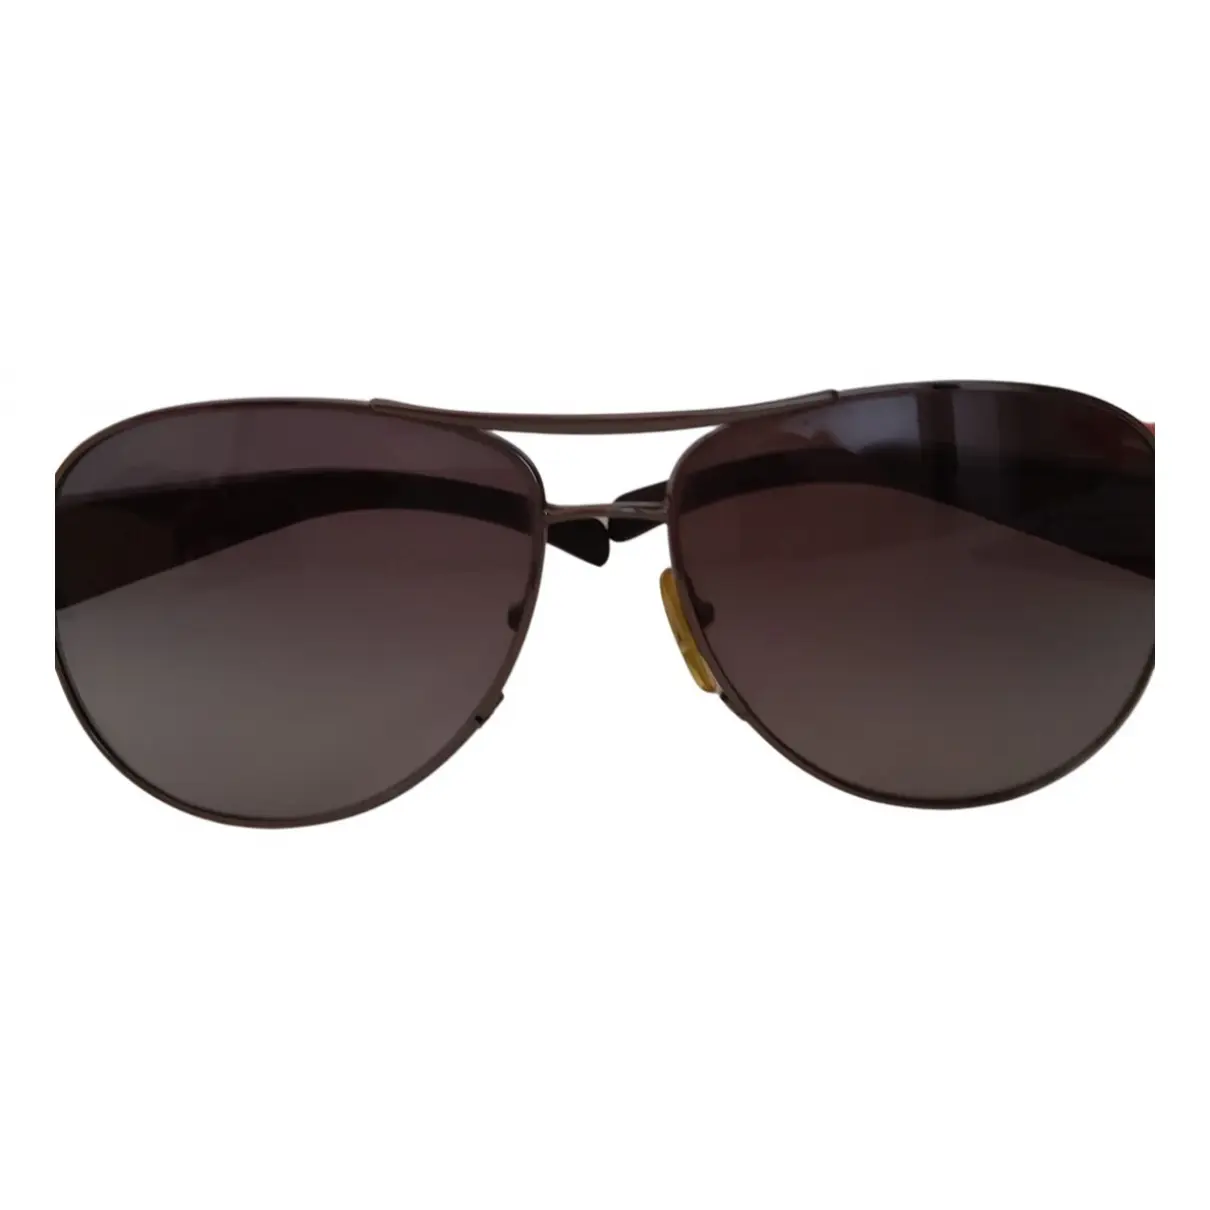 Aviator sunglasses Prada - Vintage